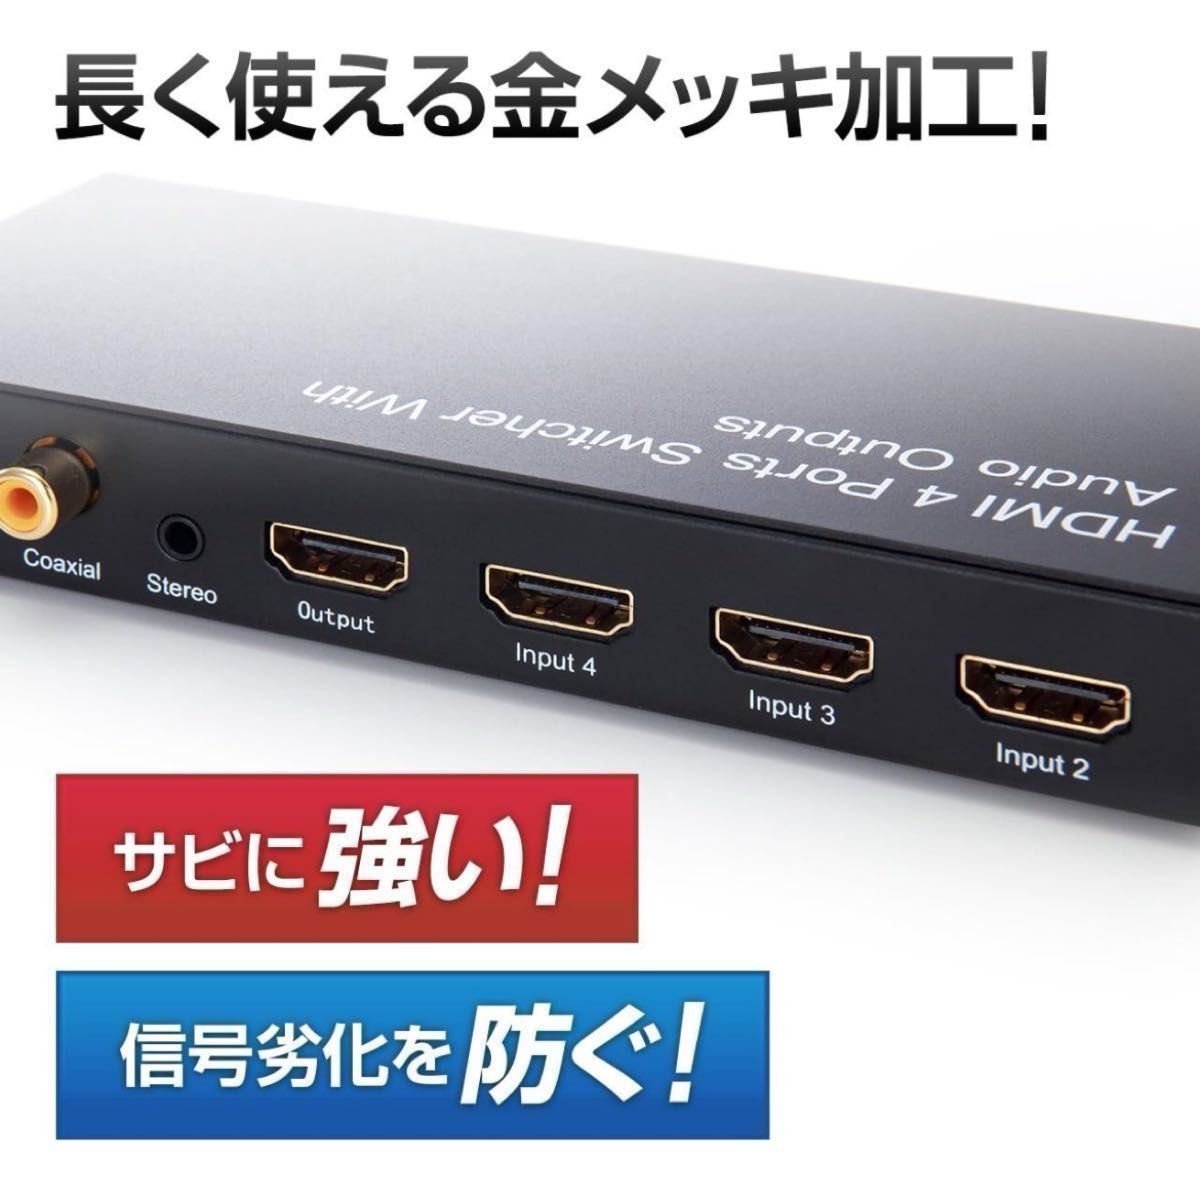 サンワダイレクト HDMIセレクター 切替器 4入力×1出力 光、同軸デジタル出力付き 3D対応 リモコン付 400-SW015